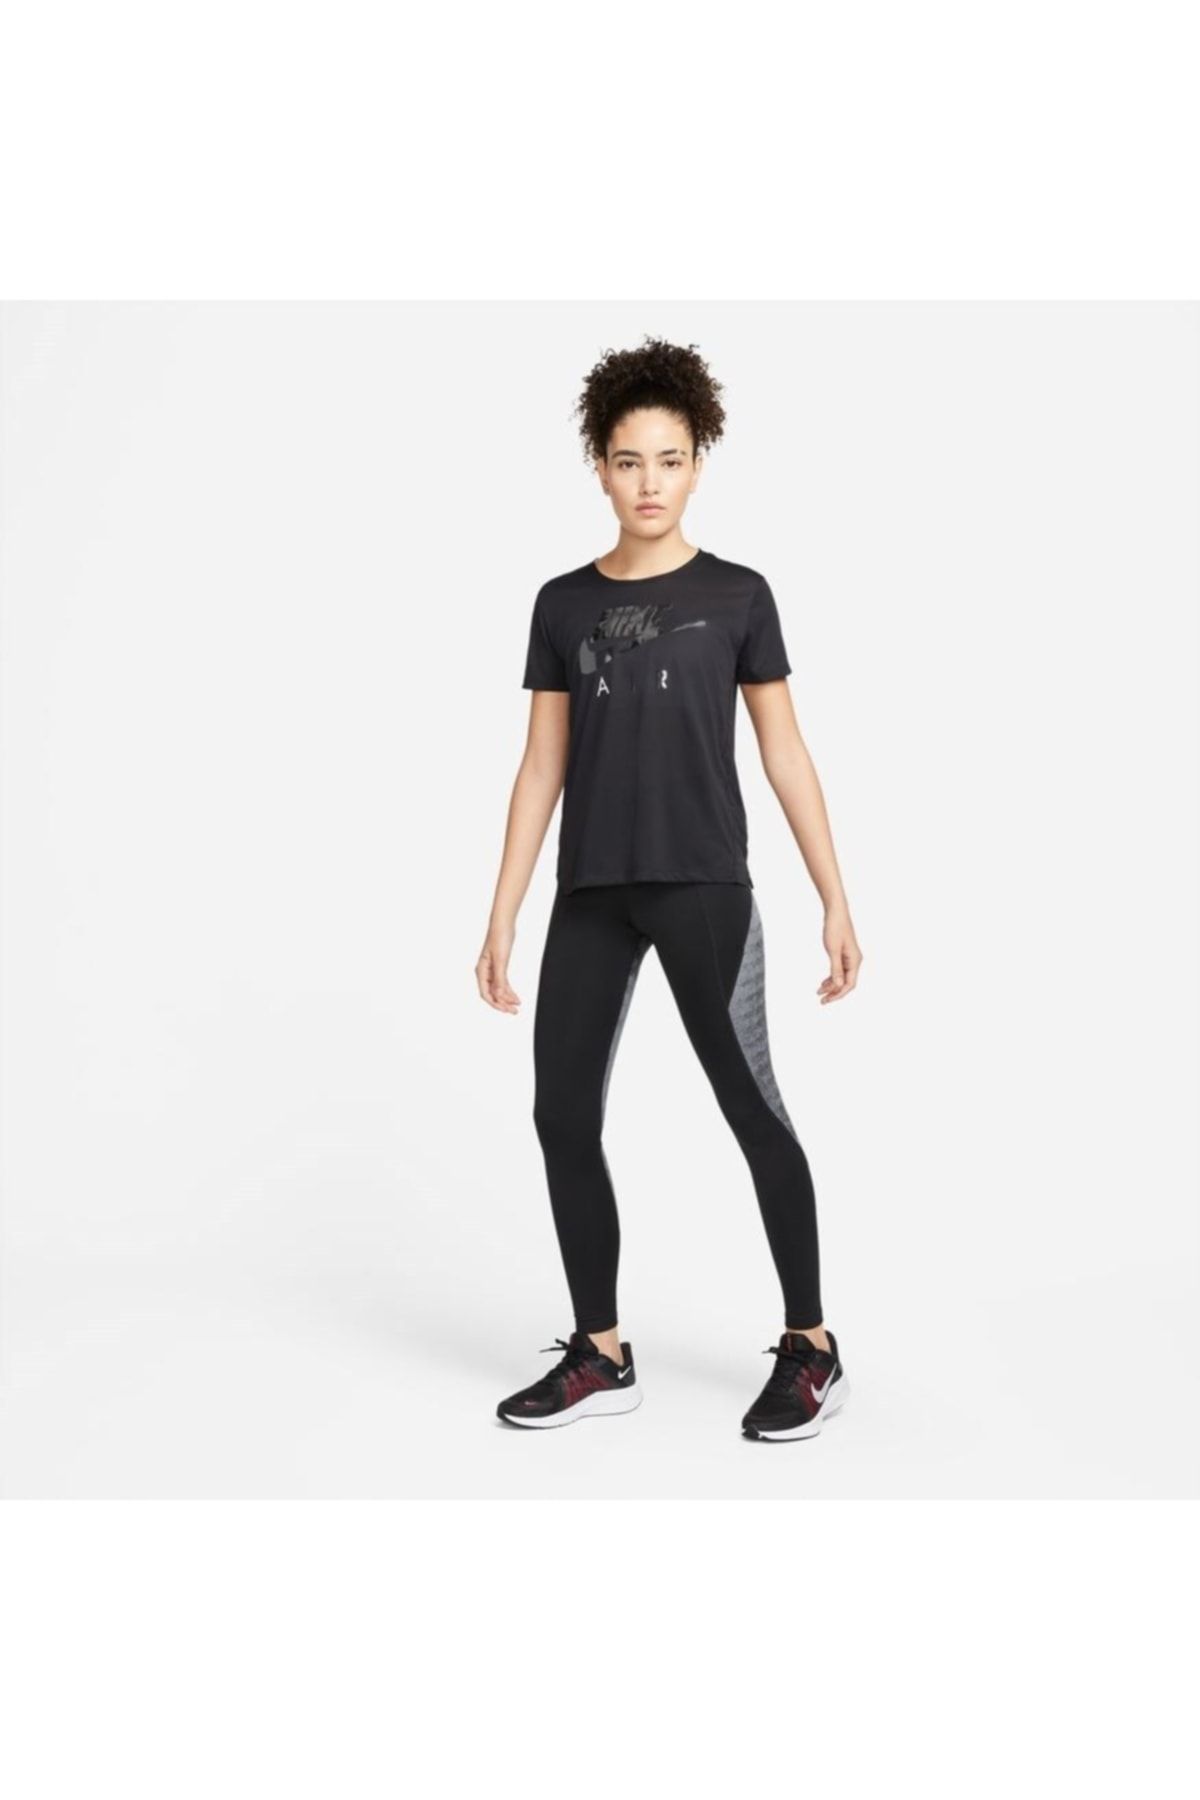 Nike Run Division Fast Women's Running Leggings - Trendyol